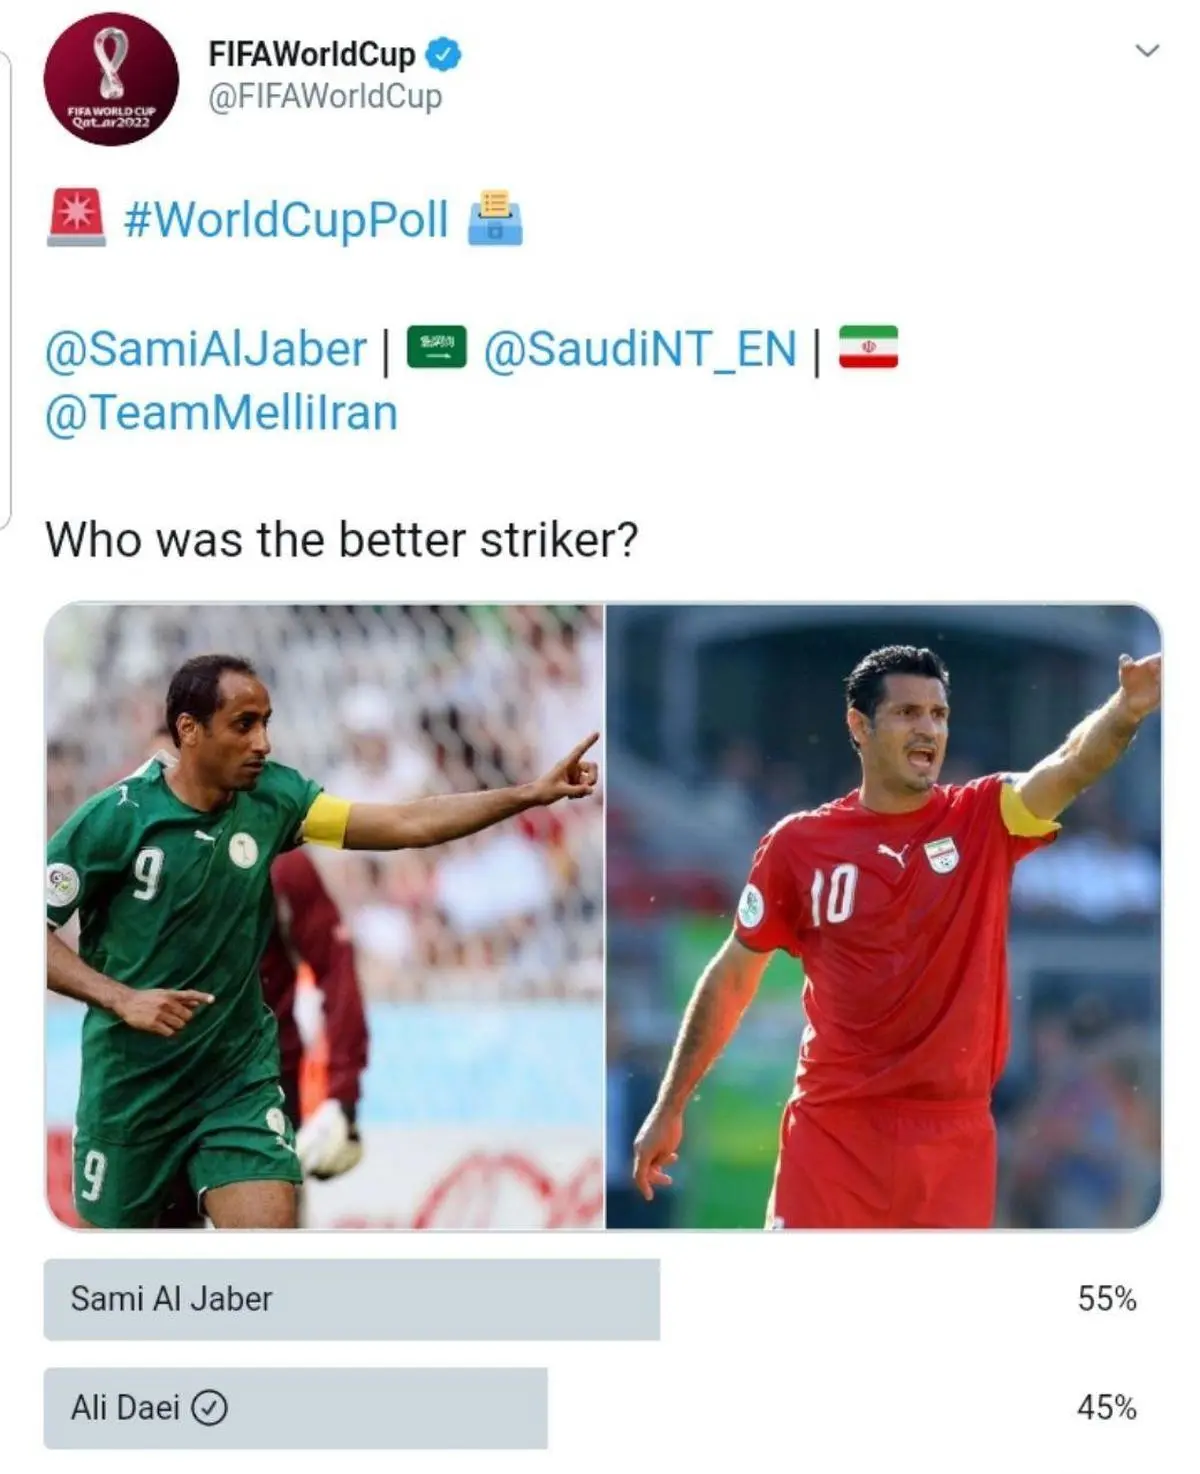 نظرسنجی فیفا برای انتخاب مهاجم برتر بین علی دایی و سامی الجابر